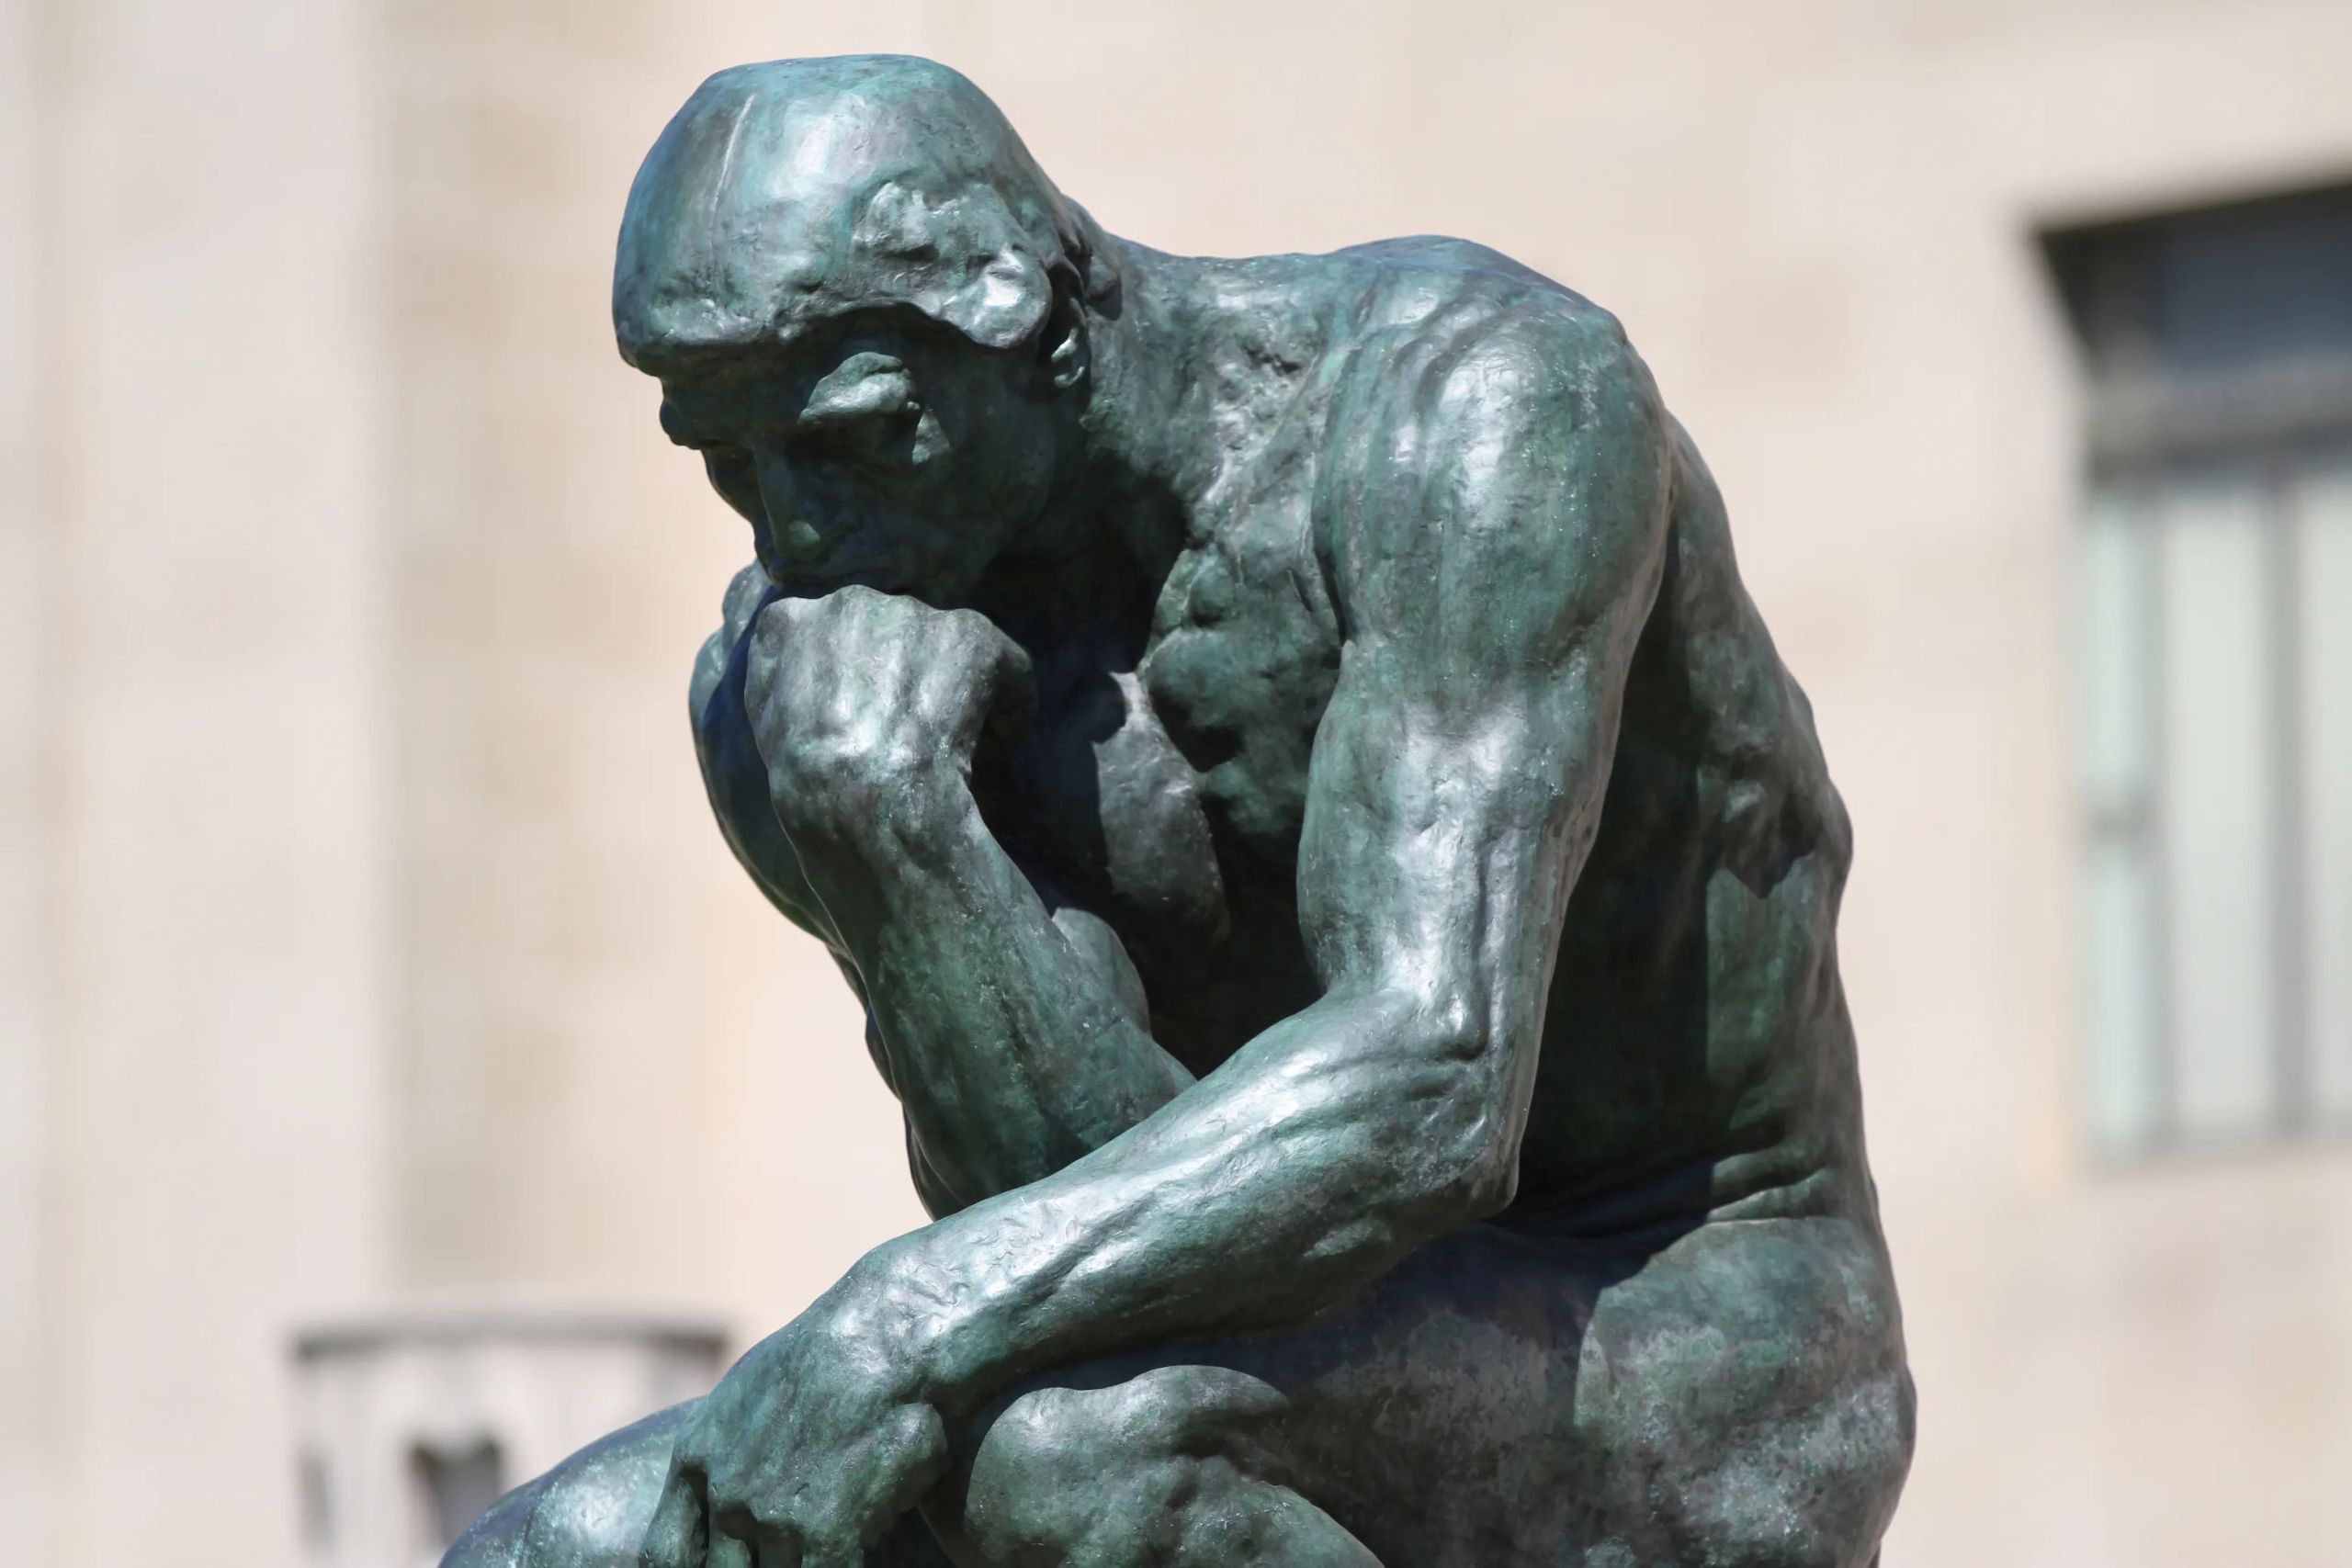 Estátua do pensador de Rodin